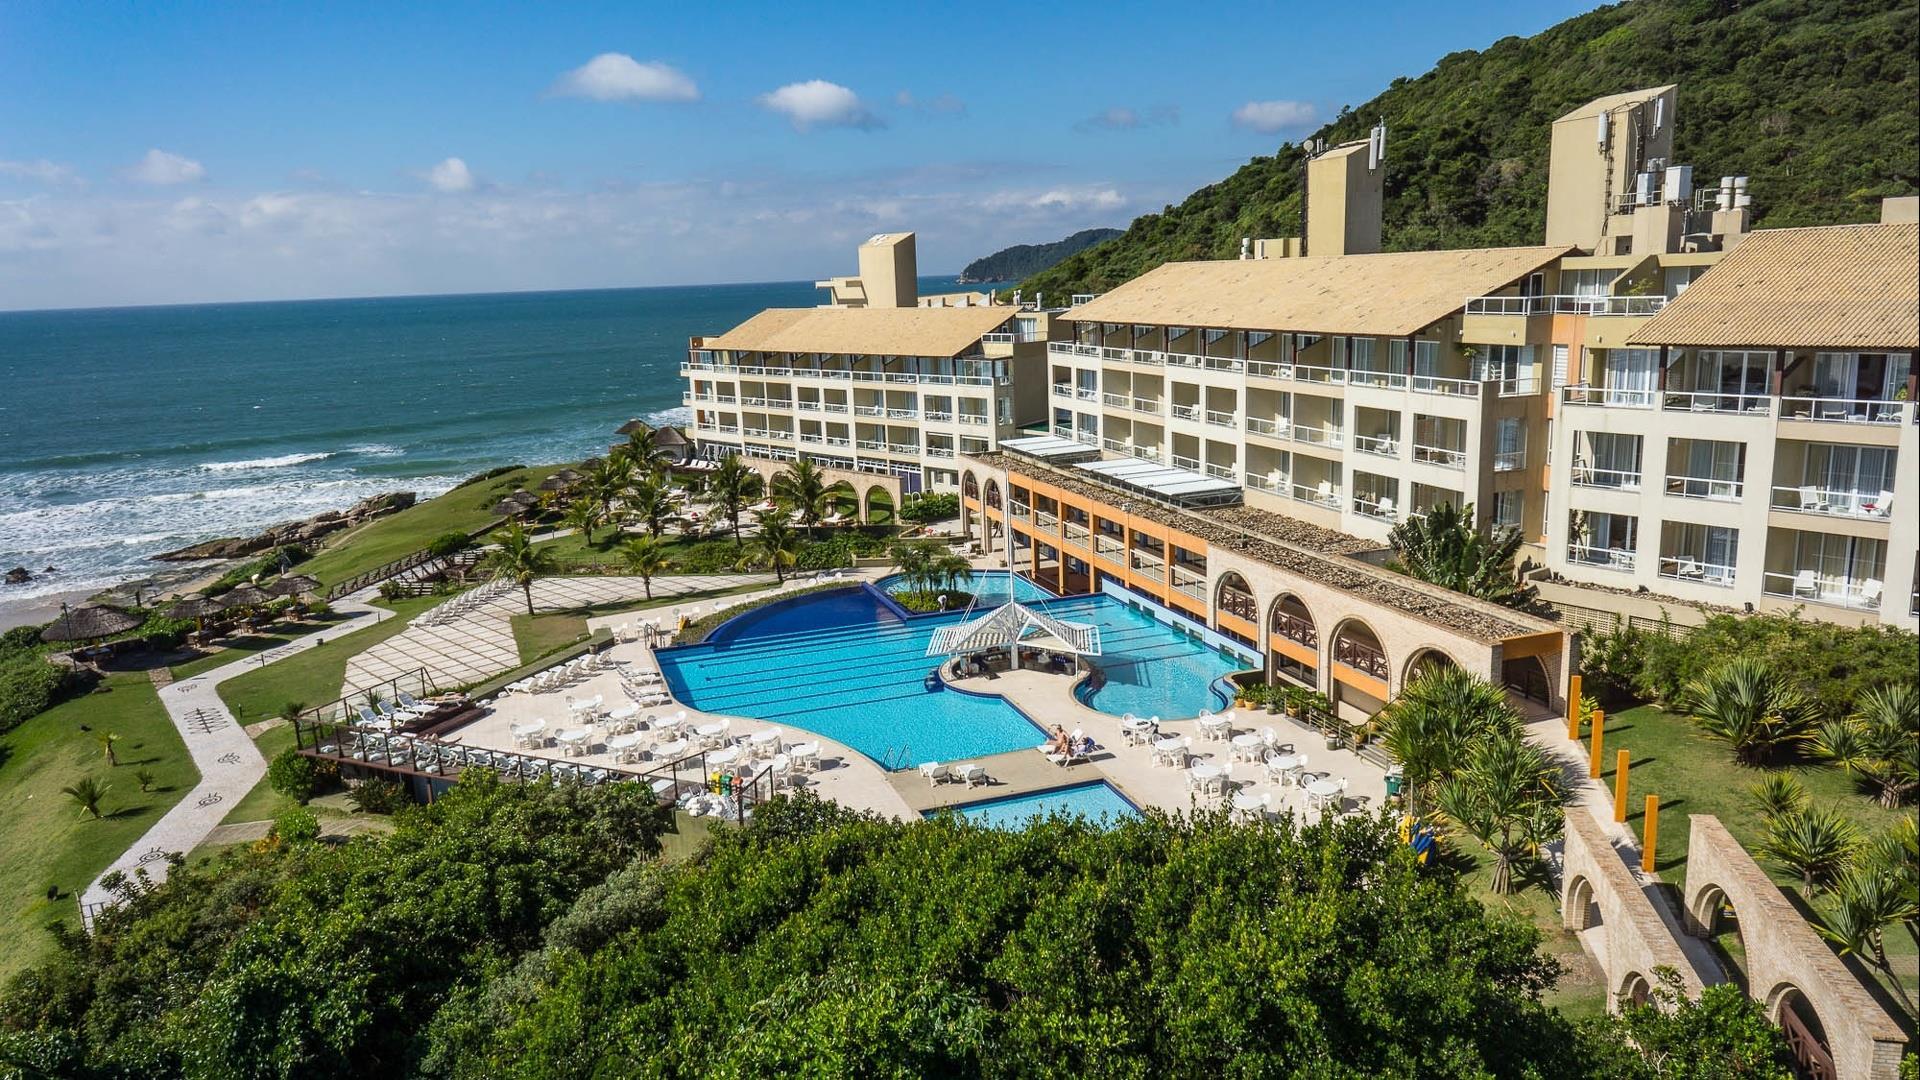 Brasilien Florianopolis: Deluxe Hotel - Hotel Resort Costao do Santinho